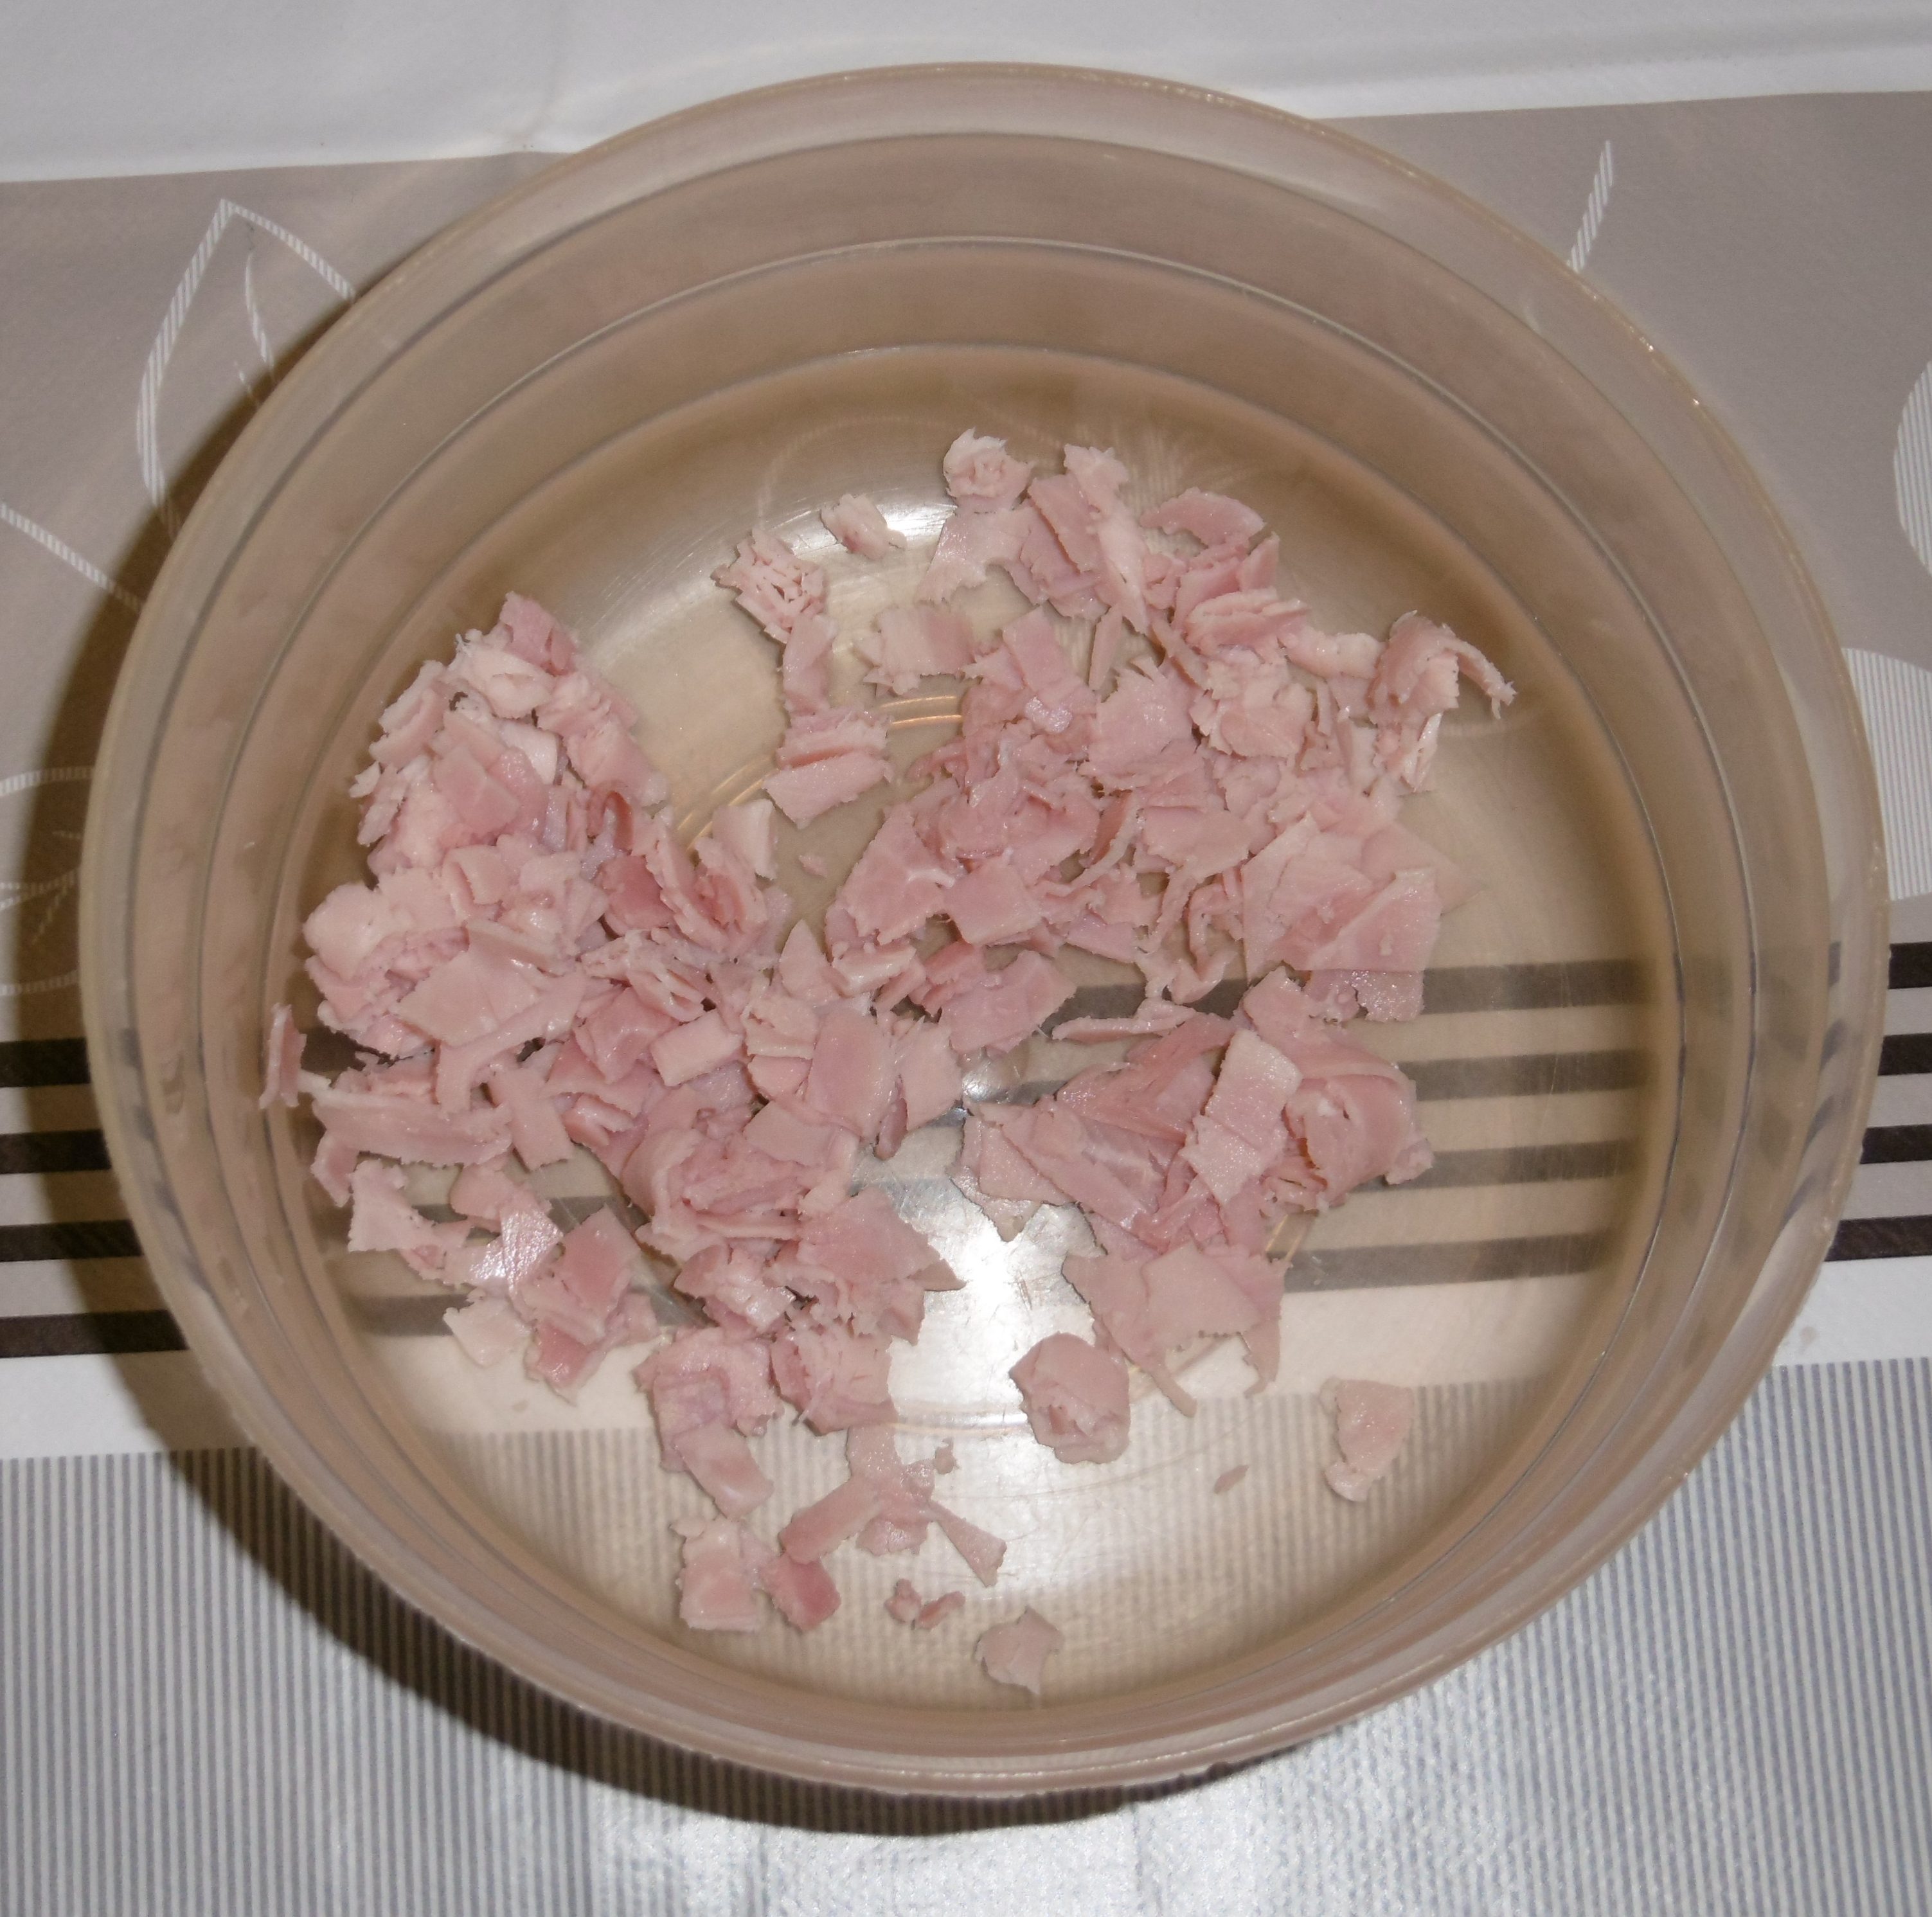 Cornetti salati ripieni - Prosciutto tagliato